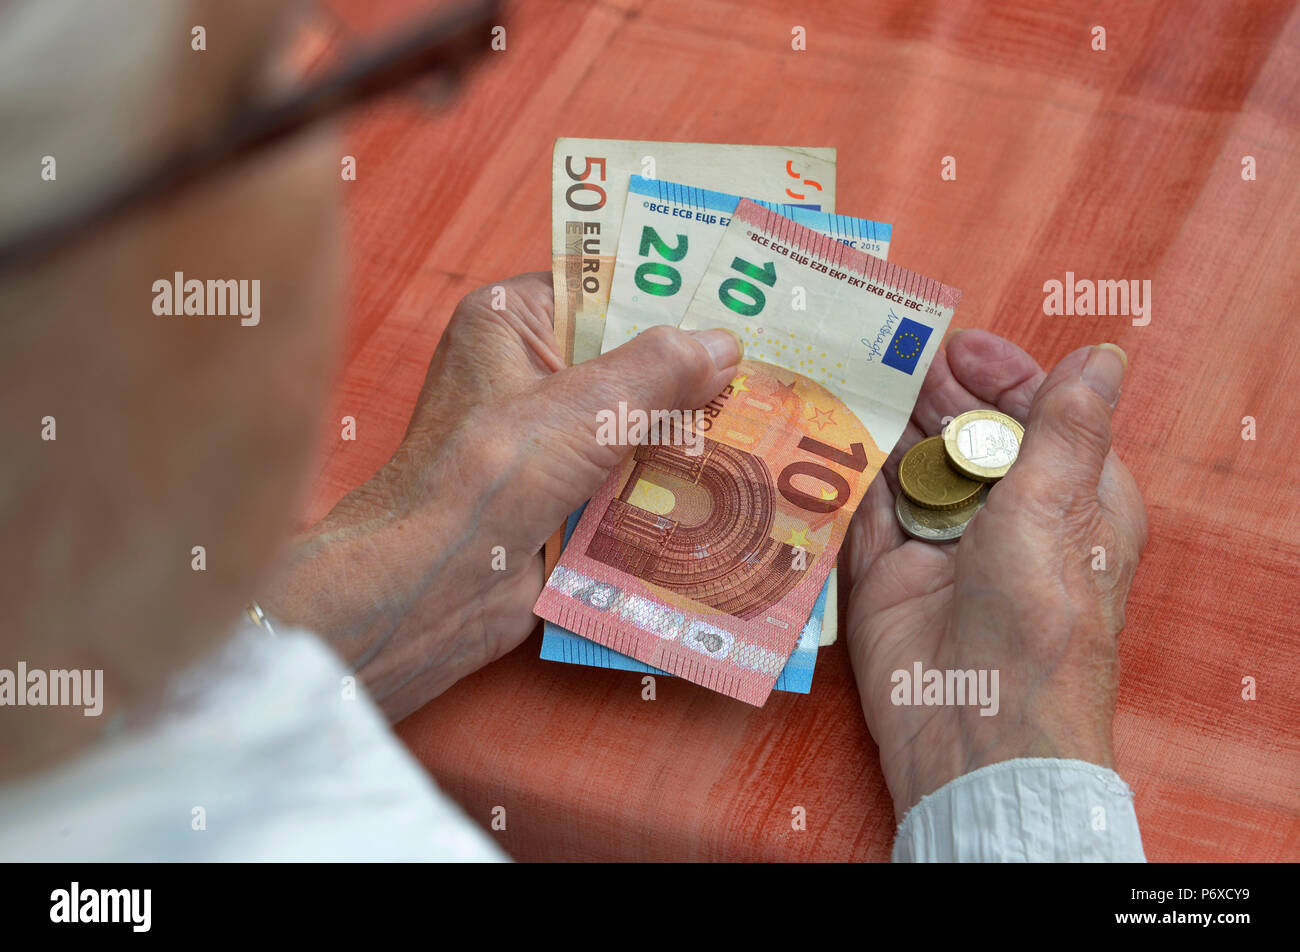 Money in hands Stock Photo